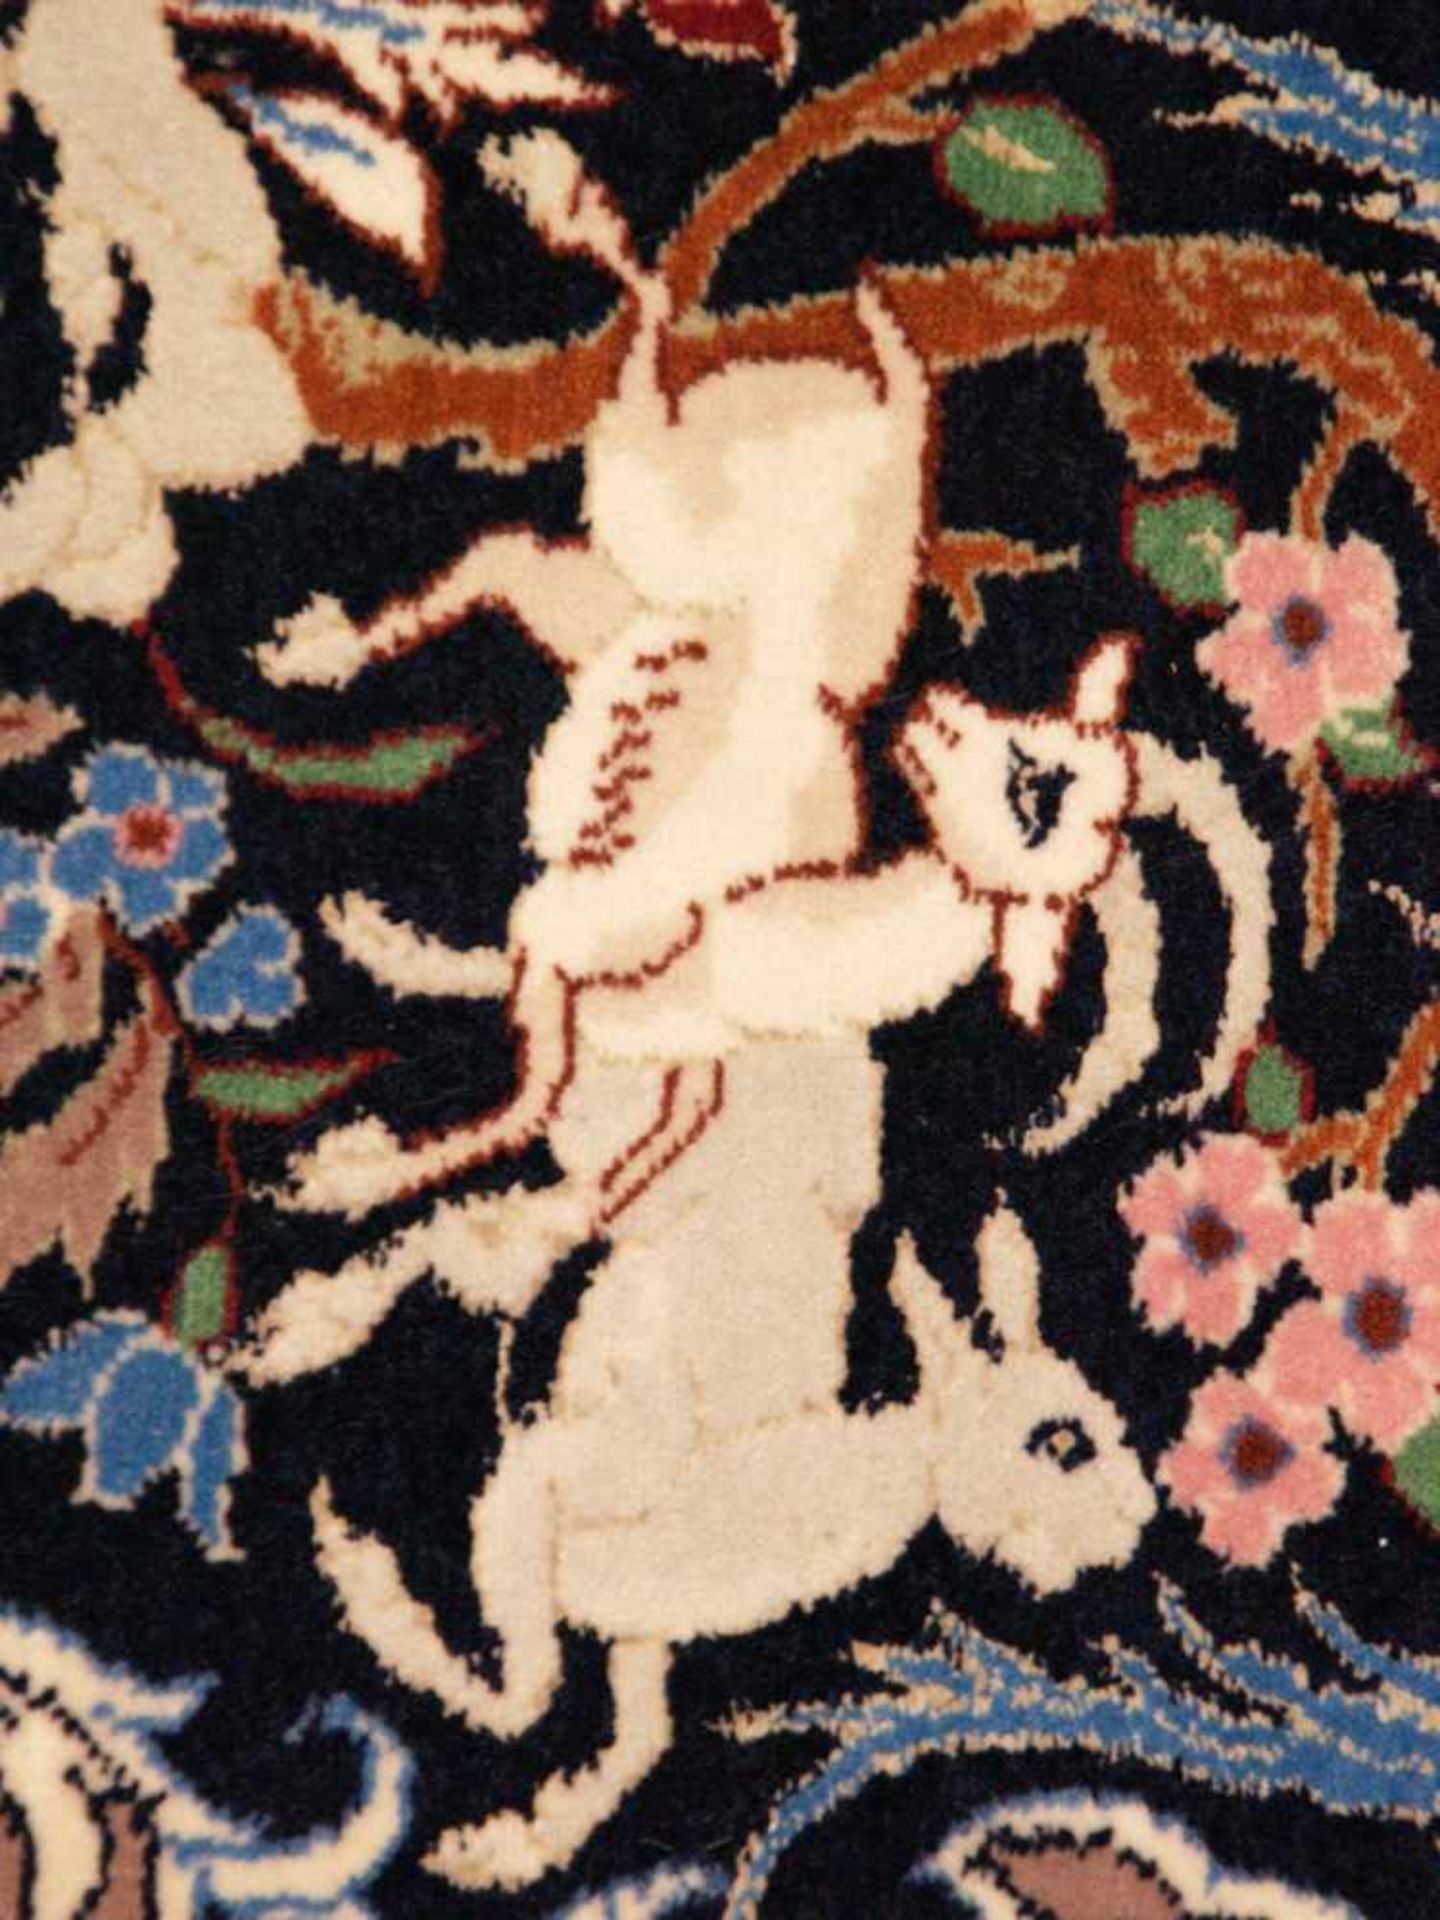 Orientteppich - Wolle und Seide, blaugrundig, zentrale florale Kartusche, gerahmt von Vögeln, - Bild 4 aus 11